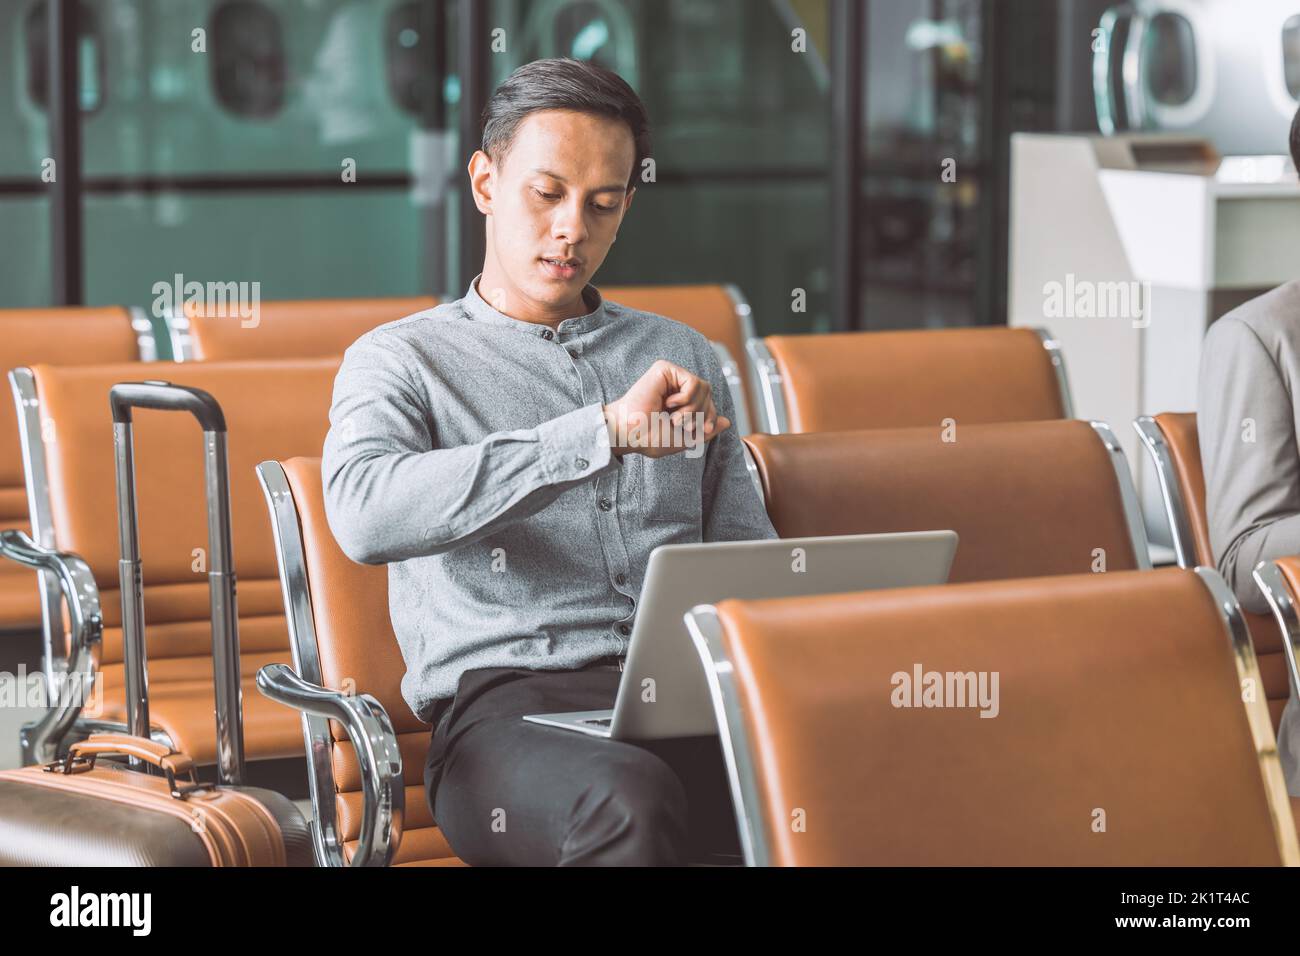 Ein Geschäftsmann, der am Flughafen langweilt und wegen der Verspätung des Fluges spät auf die Armbanduhr wartete und sich Sorgen machte Stockfoto